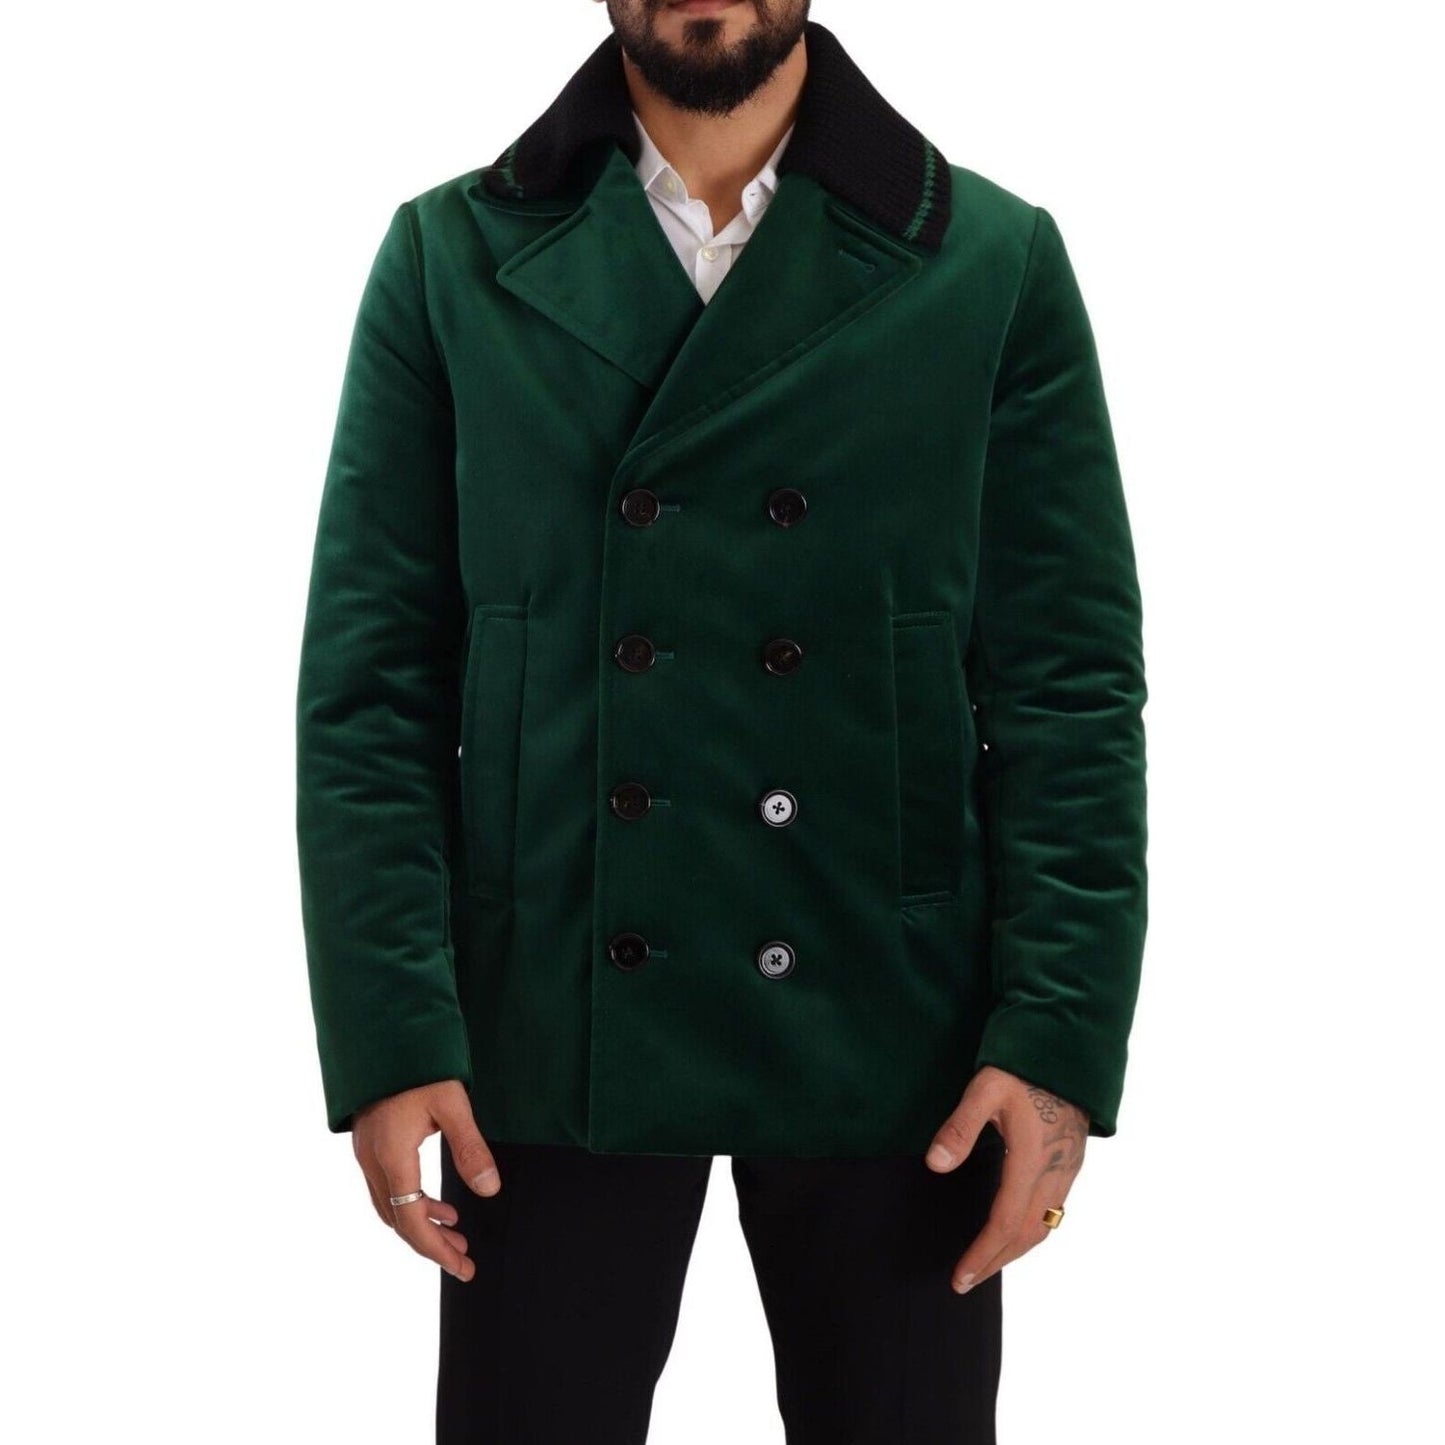 Dolce & Gabbana Elegant Velvet Double Breasted Overcoat green-velvet-cotton-double-breasted-jacket s-l1600-279-5cc5371a-dbd.jpg